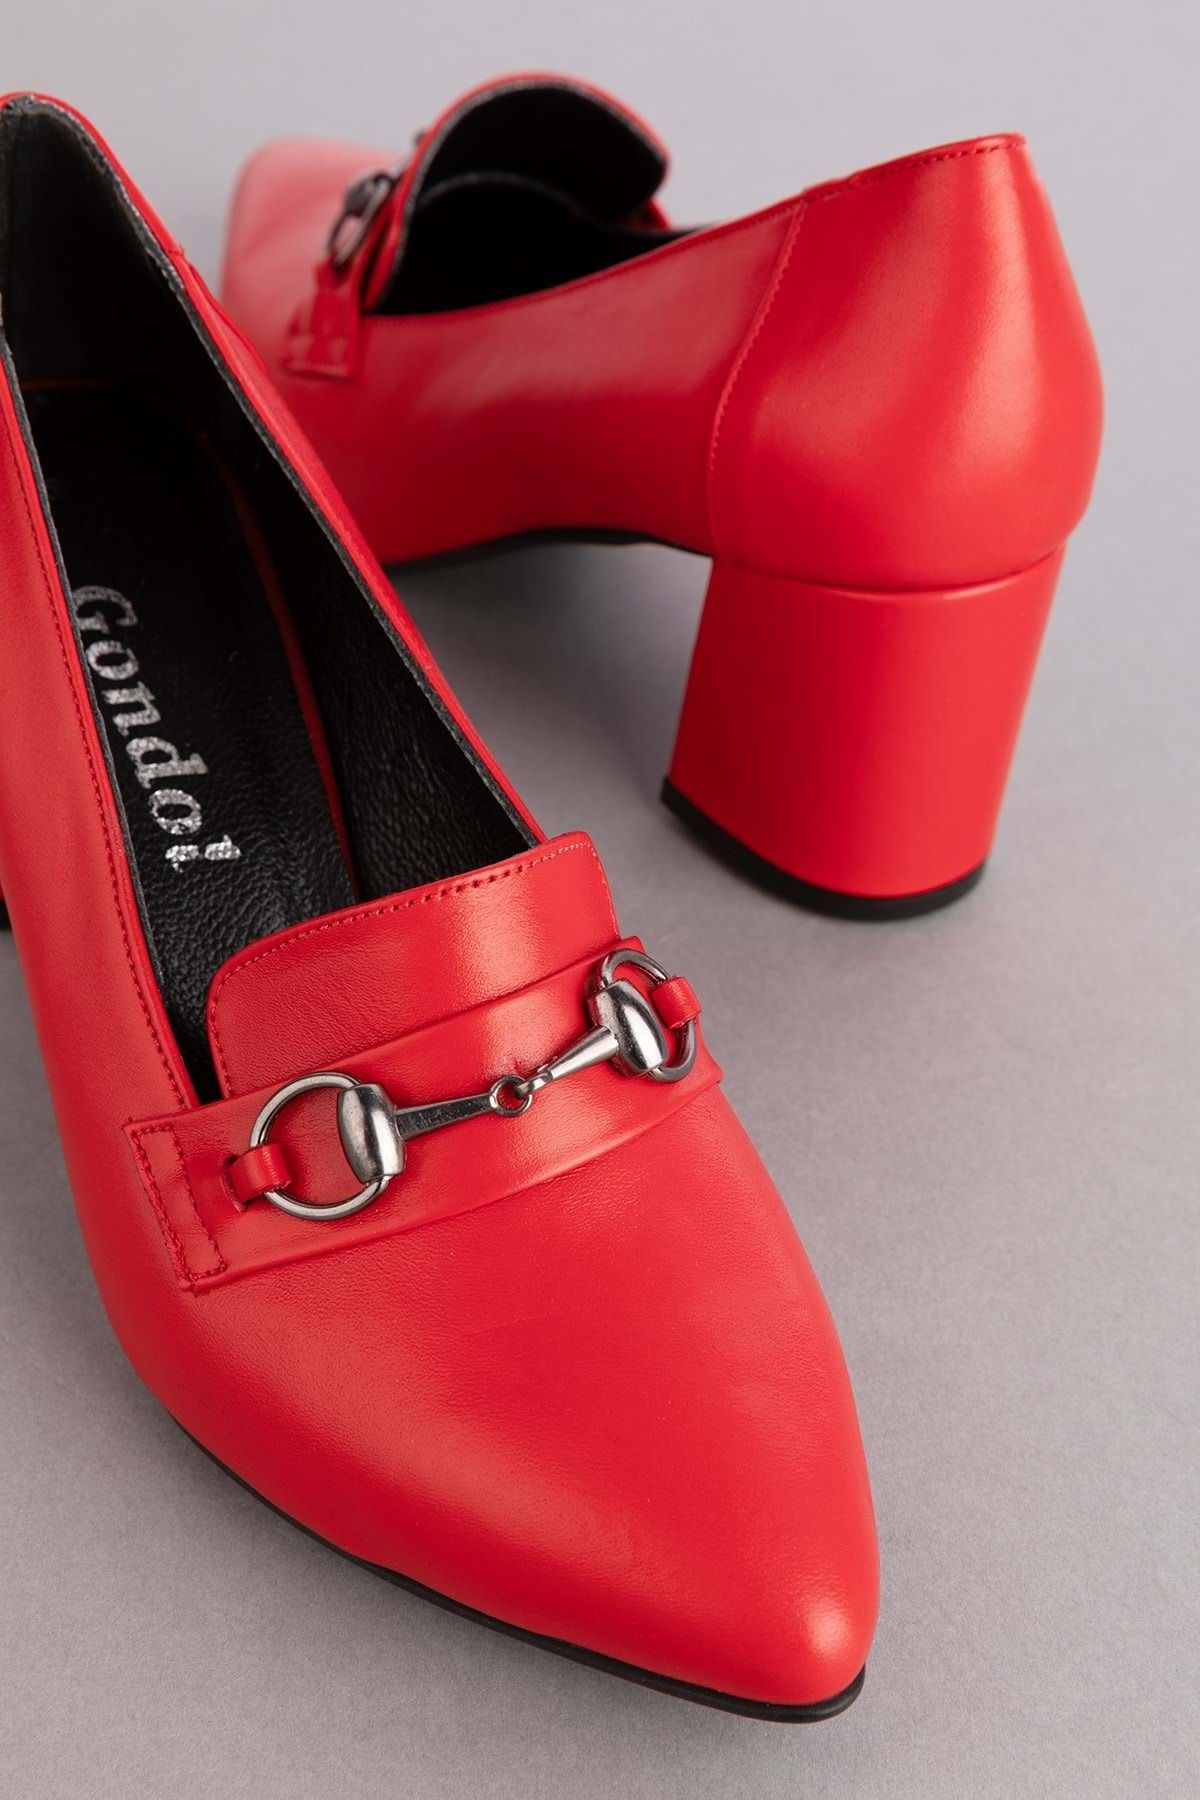 Gondol Kadın Hakiki Deri Klasik Topuklu Toka Detaylı Ayakkabı şhn.956 - kırmızı - 37